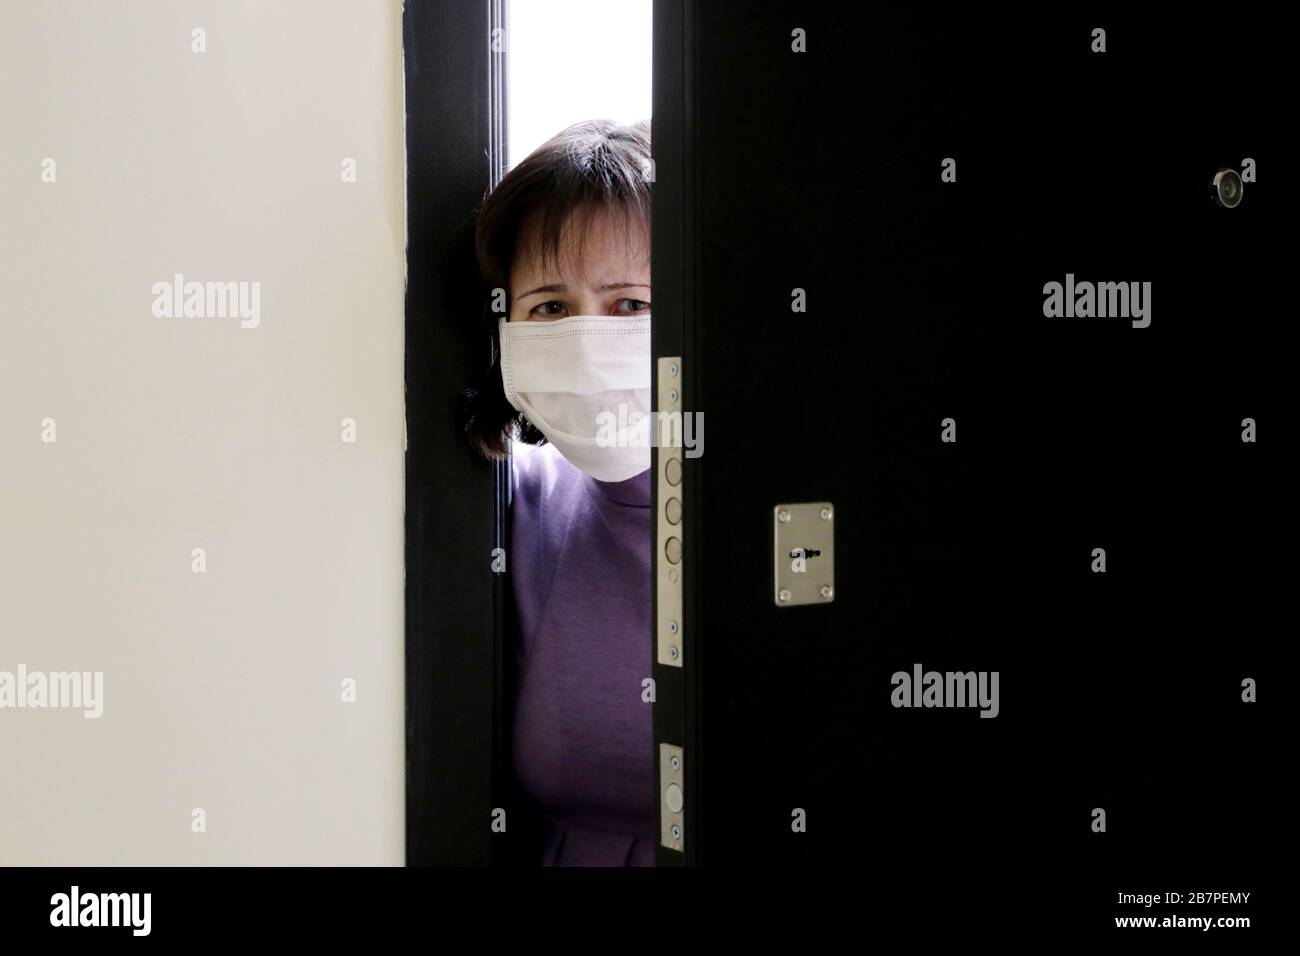 Hausquarantäne während der COVID-19-Coronavirus-Epidemie. Besorgte Frau in einer medizinischen Maske, die in der offenen Tür steht Stockfoto